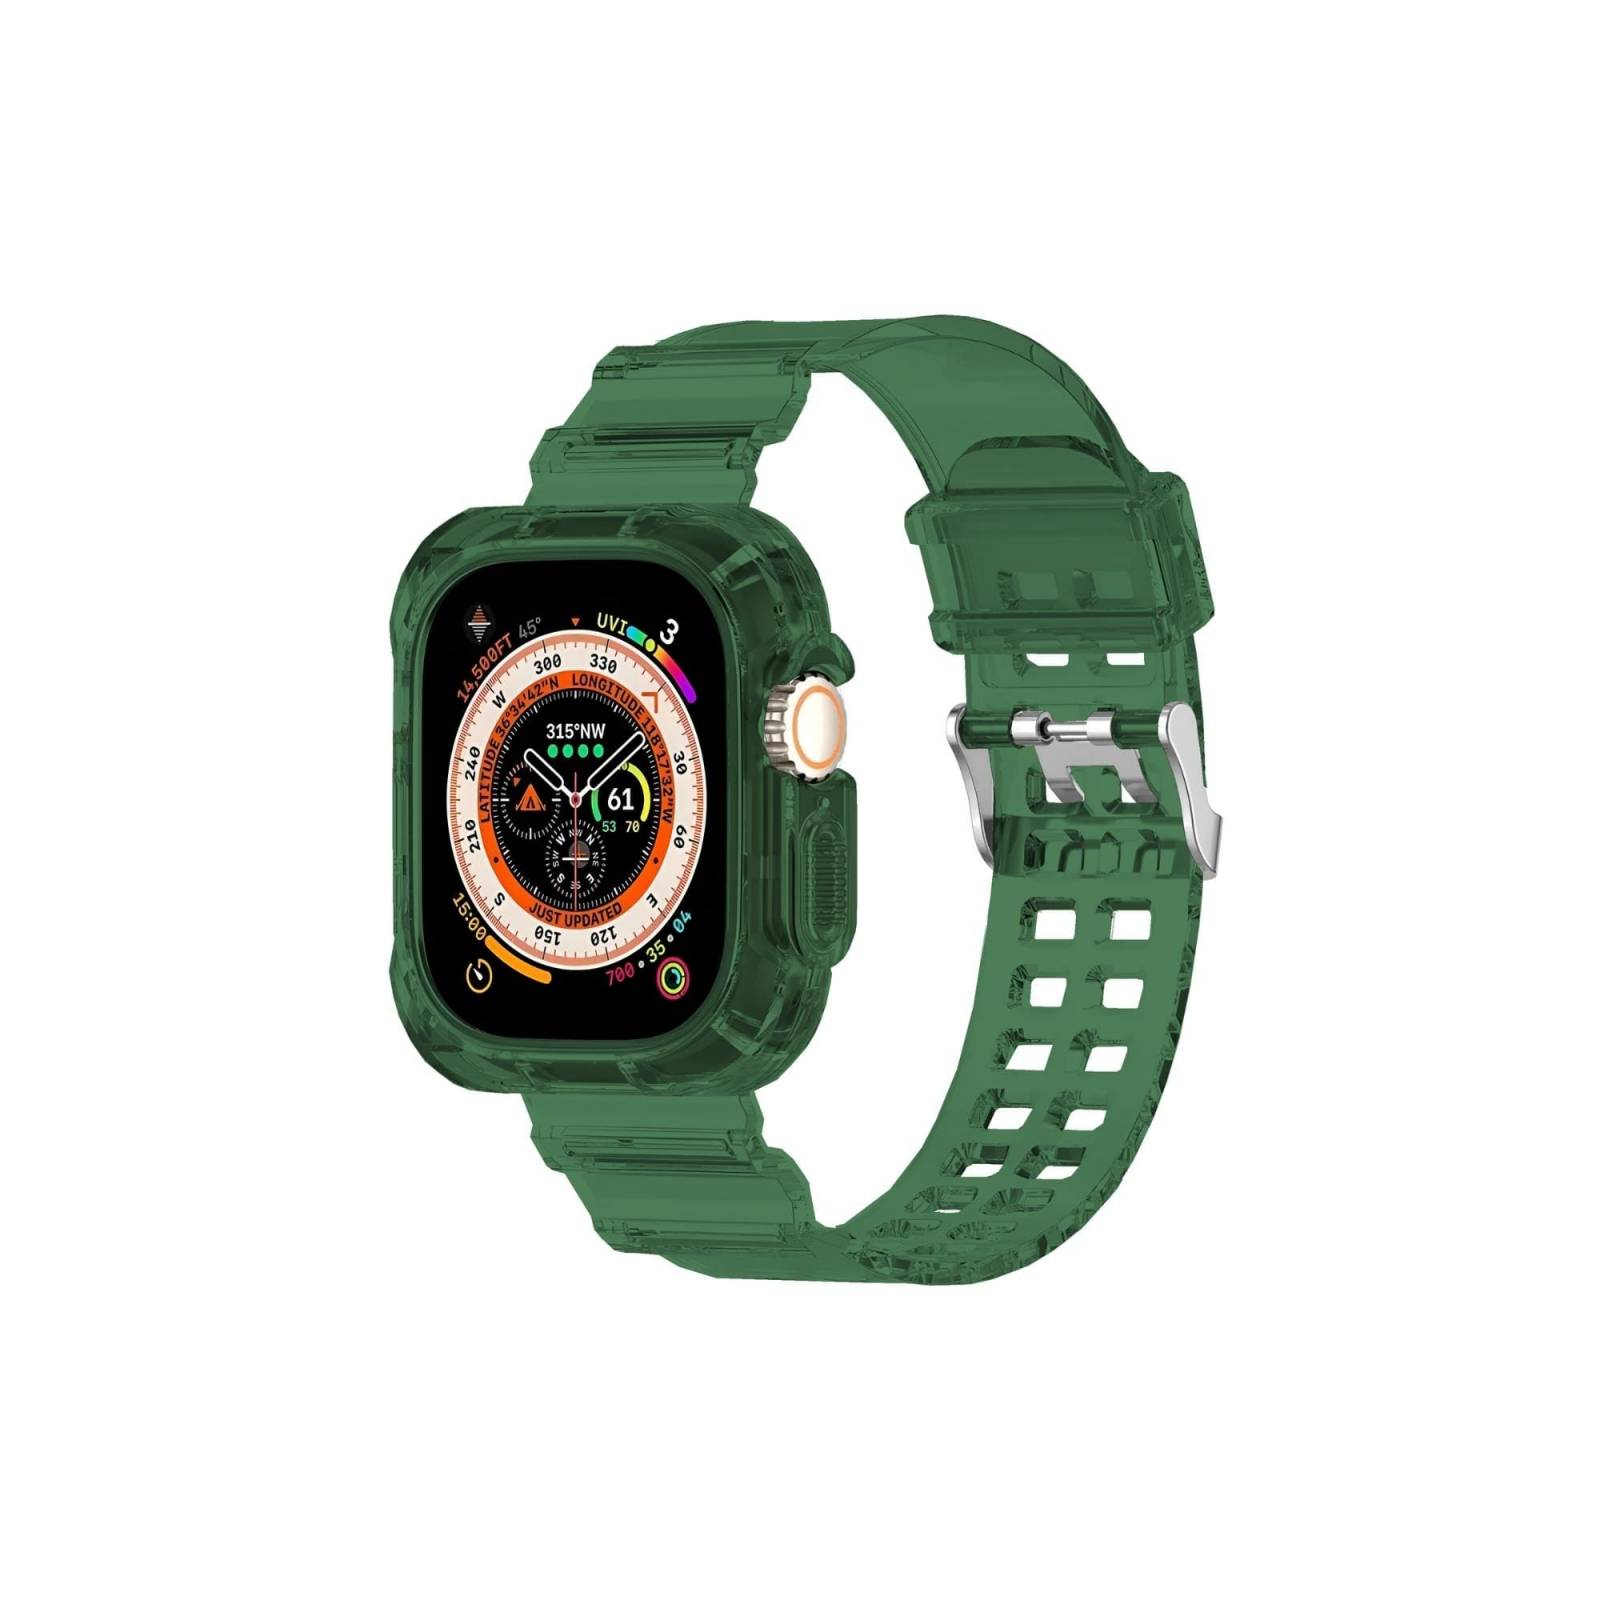 Correa reloj - Silicona - extra fuerte - verde